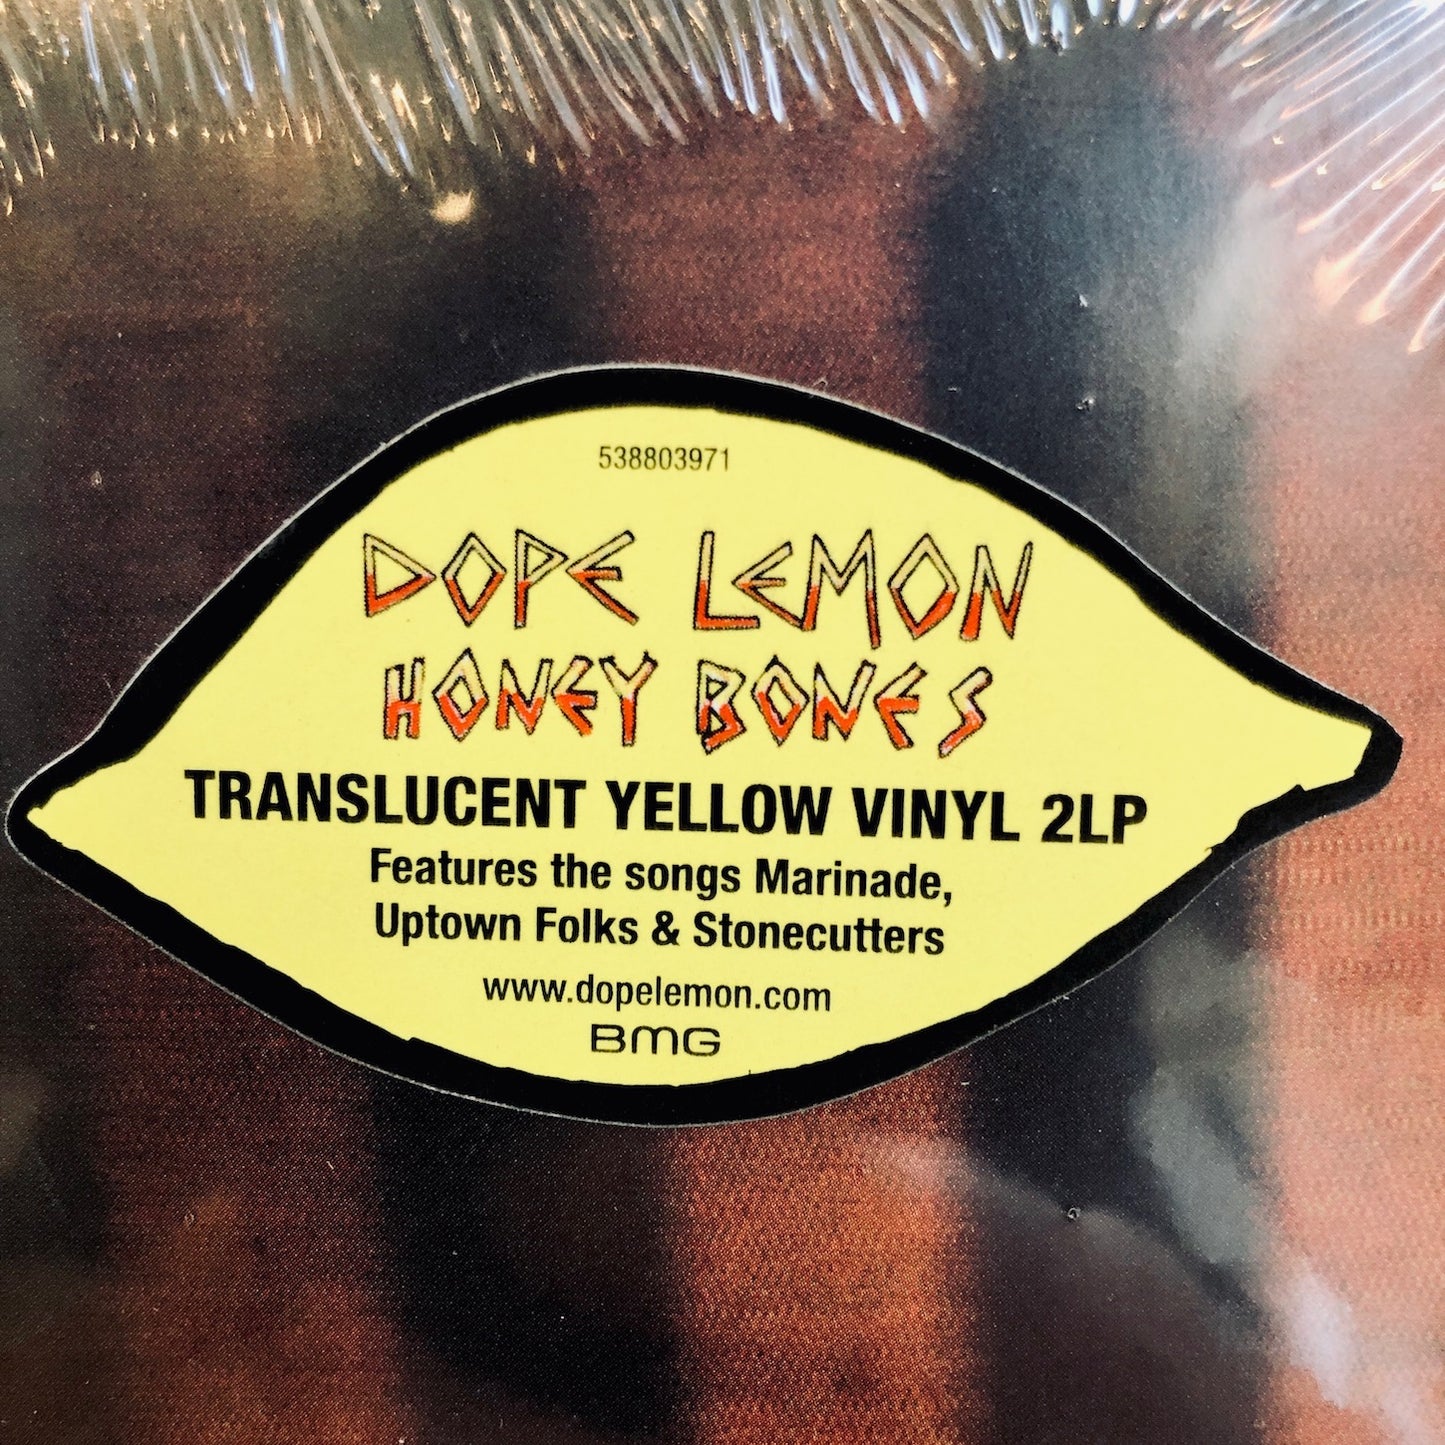 Dope Lemon - Honey Bones. 2LP [Ltd. Ed Translucent Yellow Vinyl Reissue]